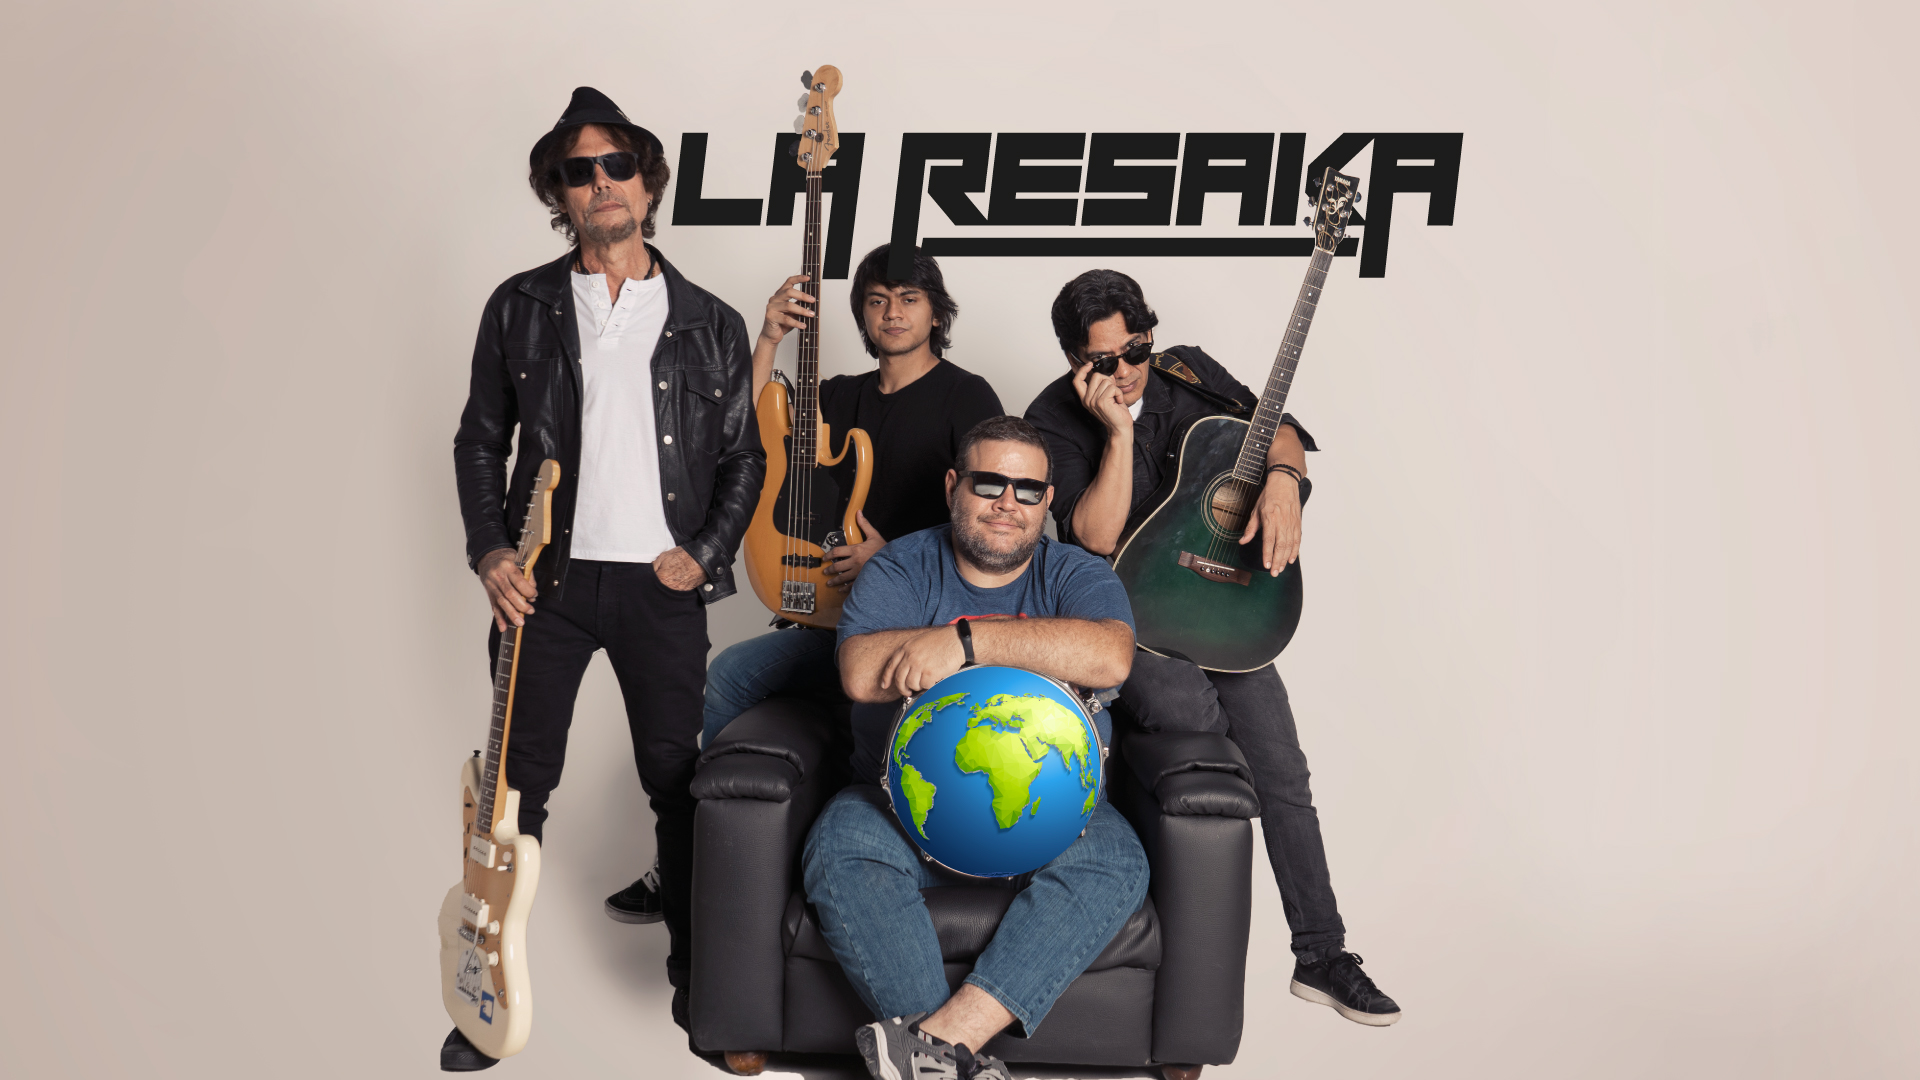 la-resaka-rock-latino-mundialista